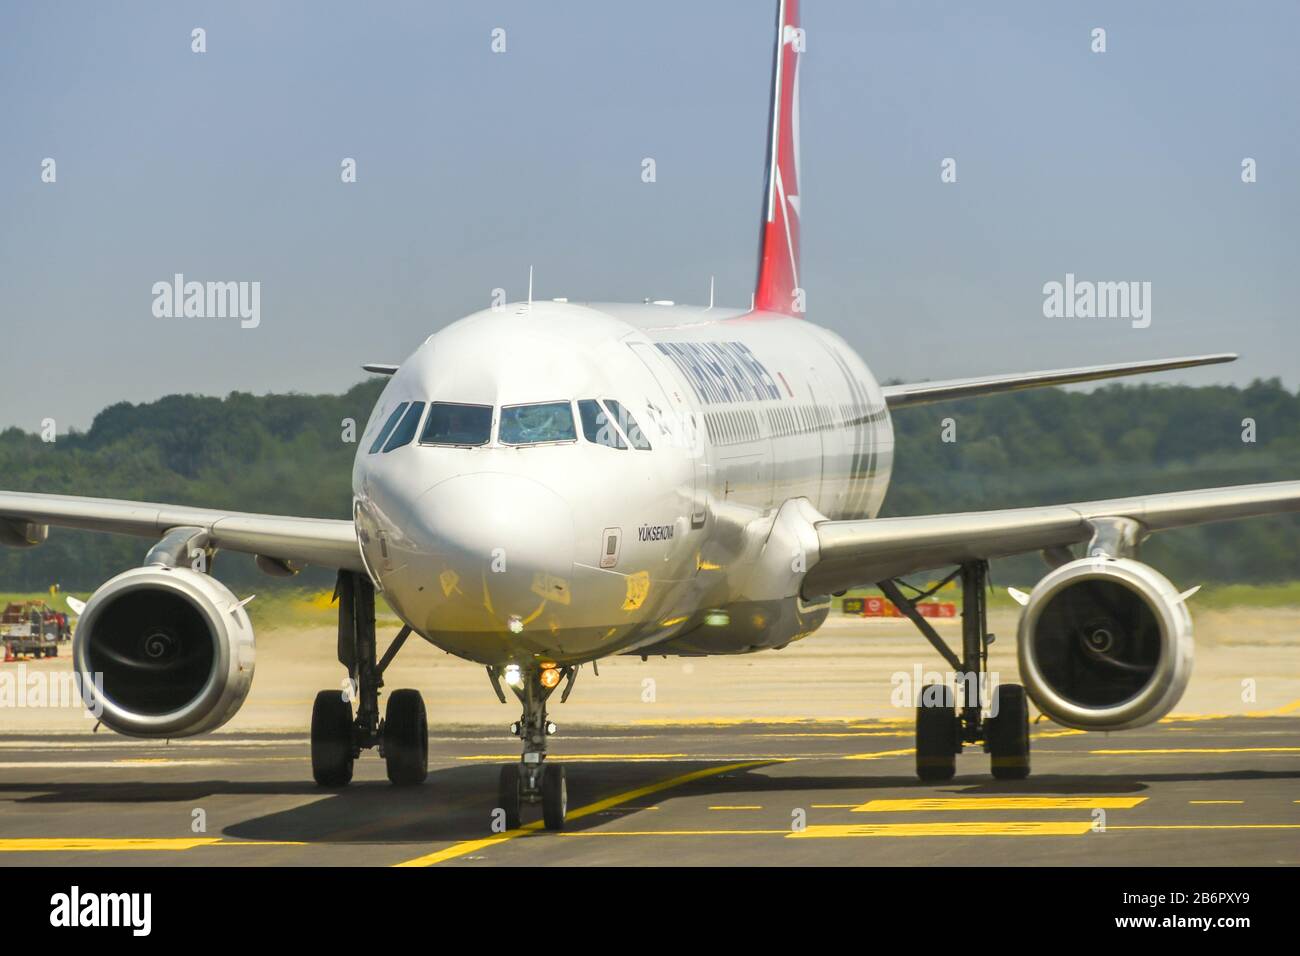 Mailand, ITALIEN - JUNI 2019: Turkish Airlines Airbus fährt mit dem Flugzeug zum Terminal, nachdem sie am Flughafen Mailand-Malpensa angekommen ist. Stockfoto